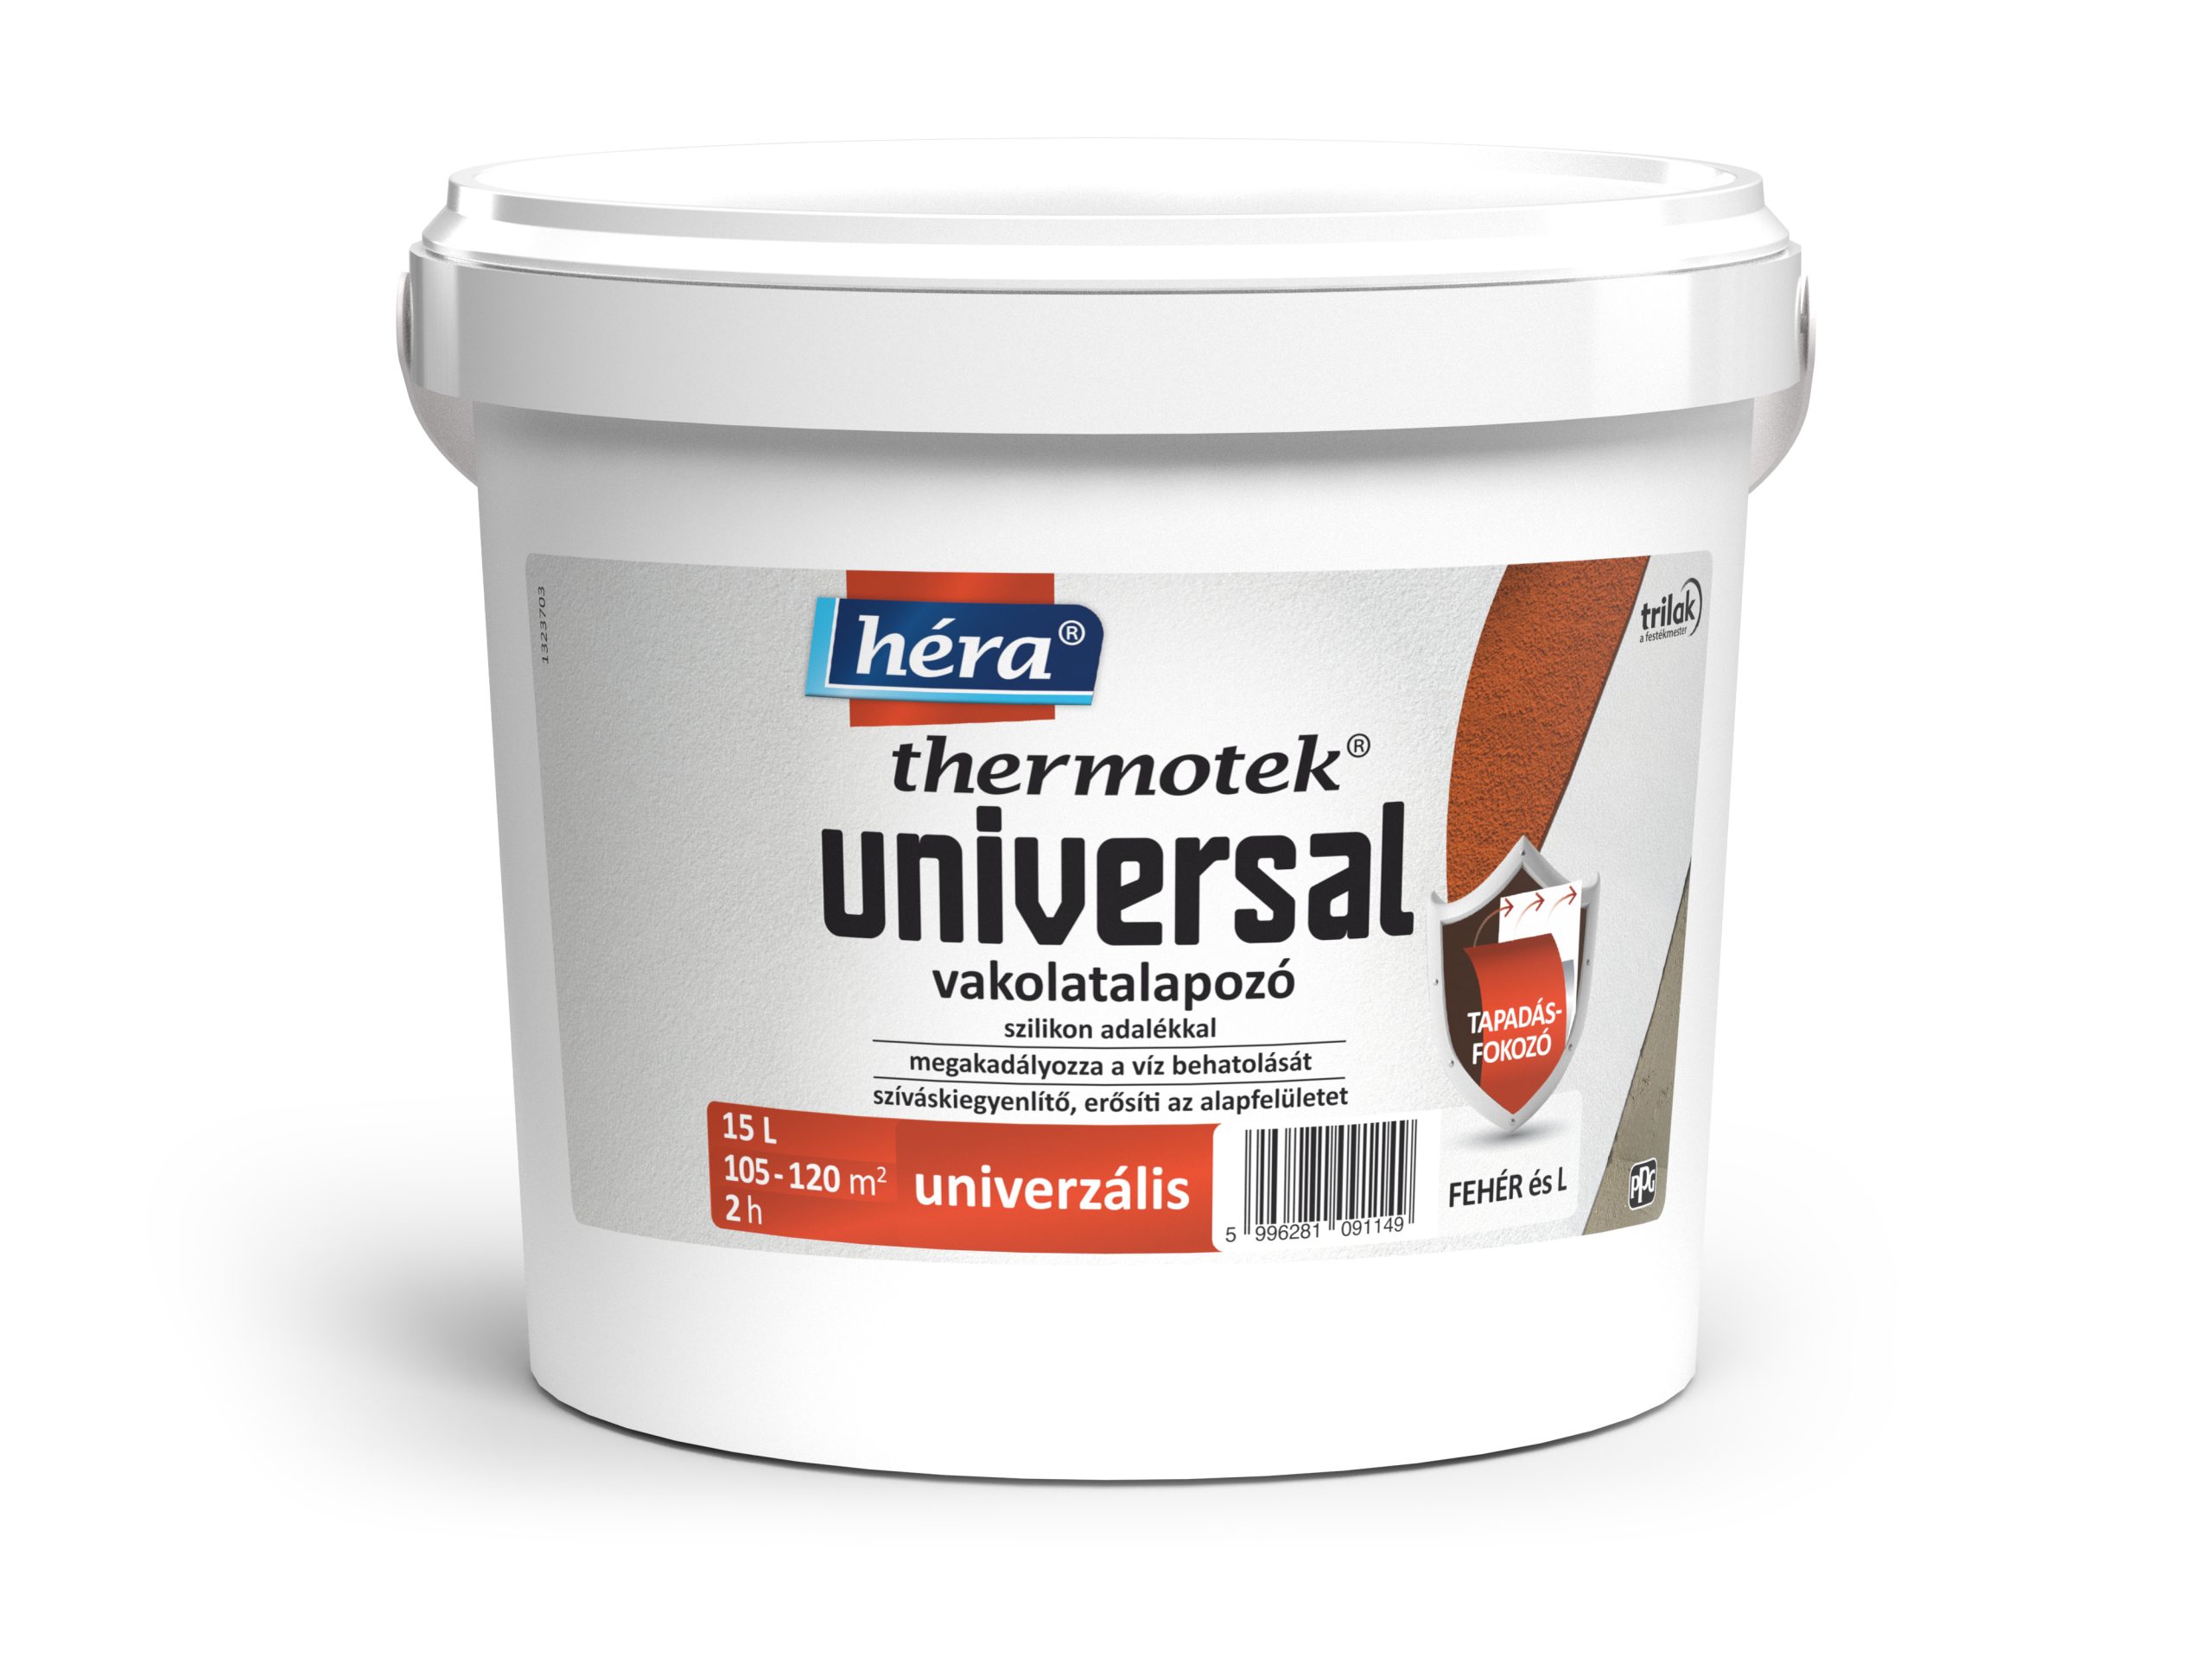 Héra® Thermotek Universal vakolatalapozó